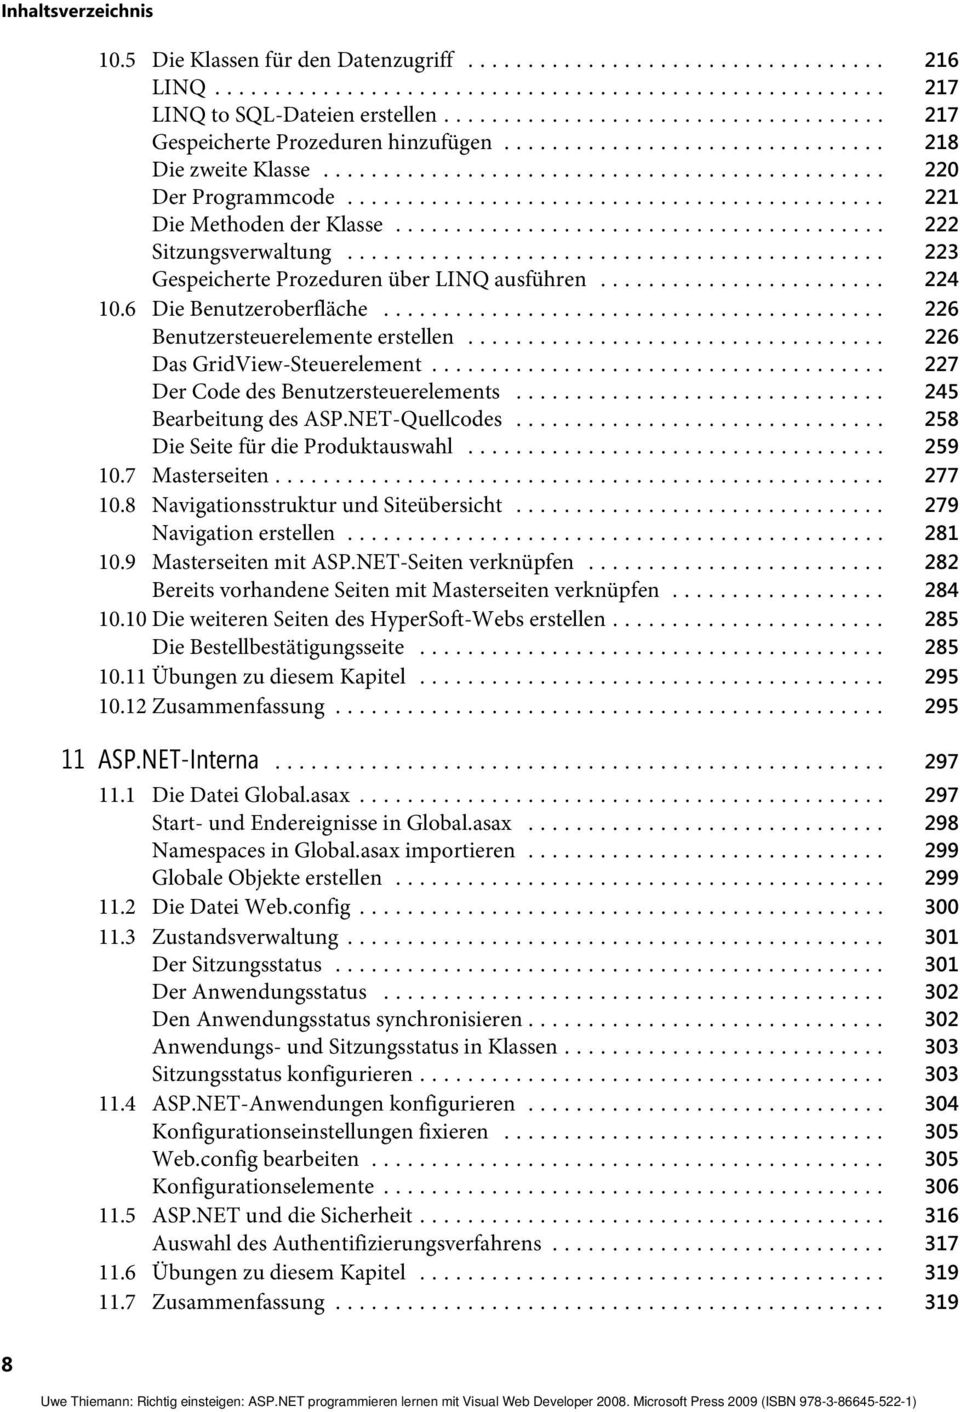 .. 226 Das GridView-Steuerelement... 227 Der Code des Benutzersteuerelements... 245 Bearbeitung des ASP.NET-Quellcodes... 258 Die Seite für die Produktauswahl... 259 10.7 Masterseiten... 277 10.